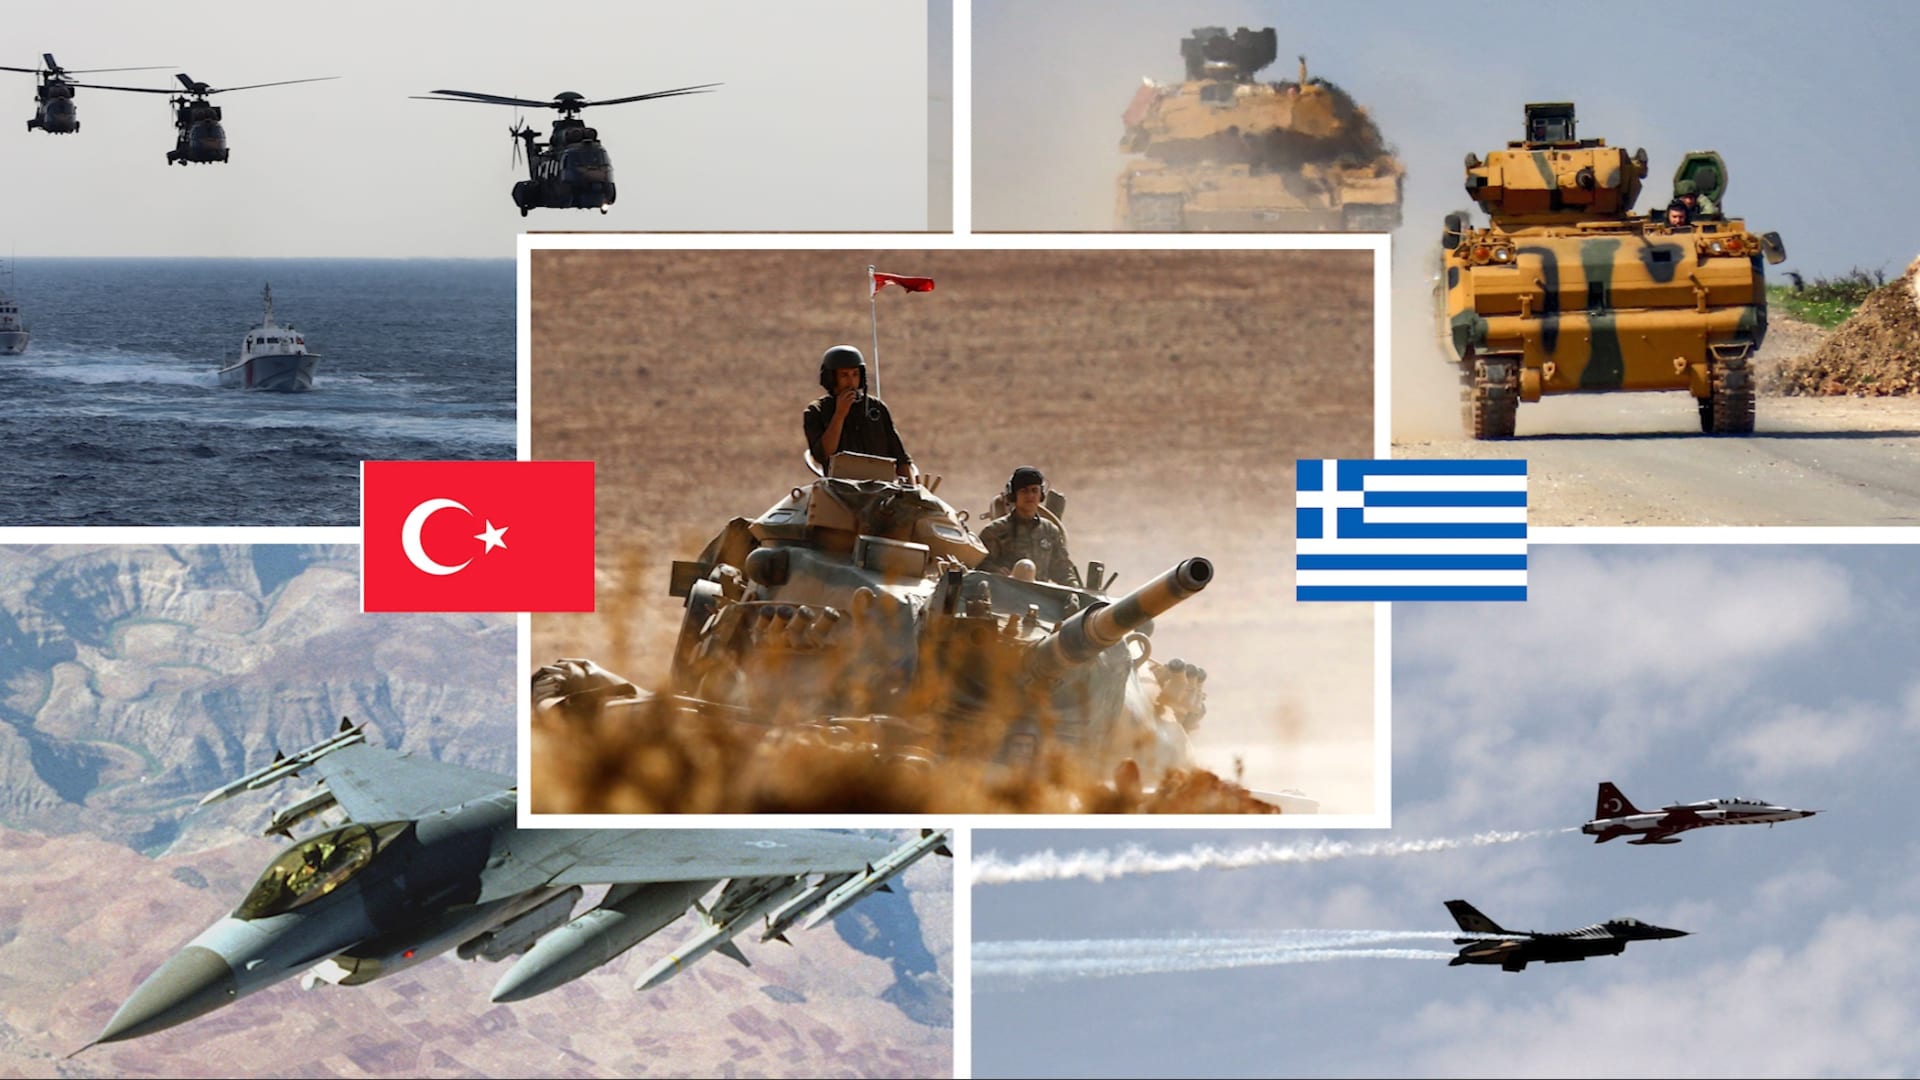 مع بدء عين الصقر بمشاركة سعودية.. إليكم مقارنة بين جيشي تركيا واليونان